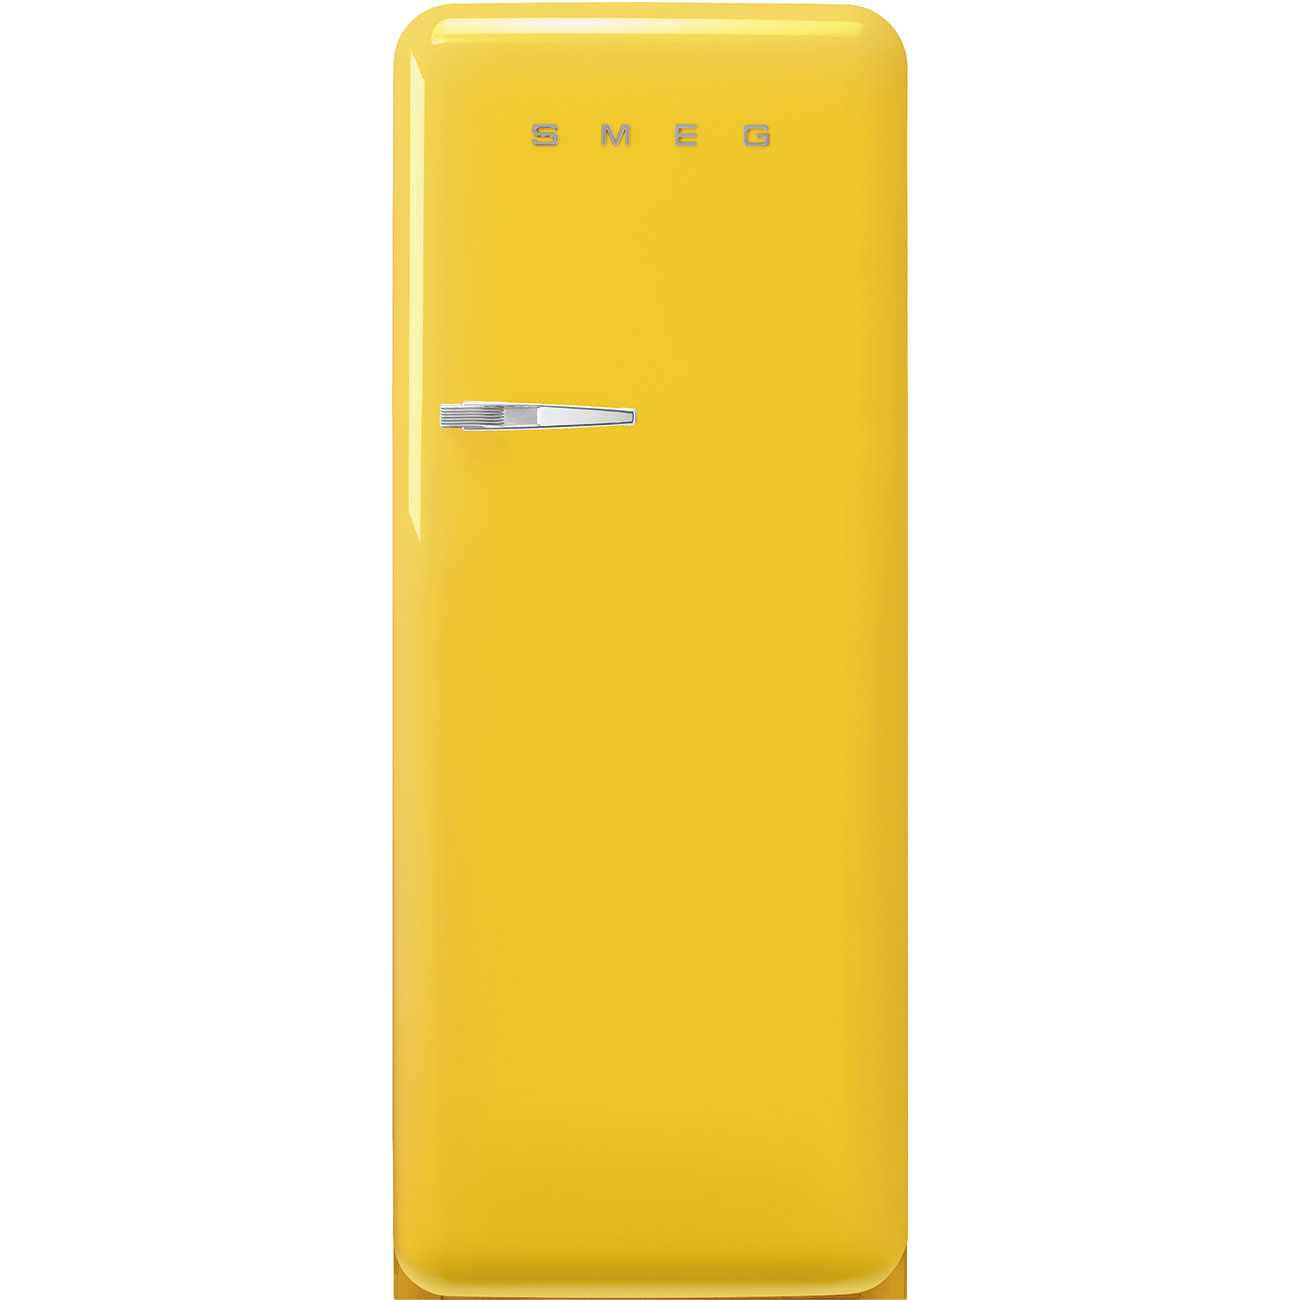 Geel koelkast - Smeg_1